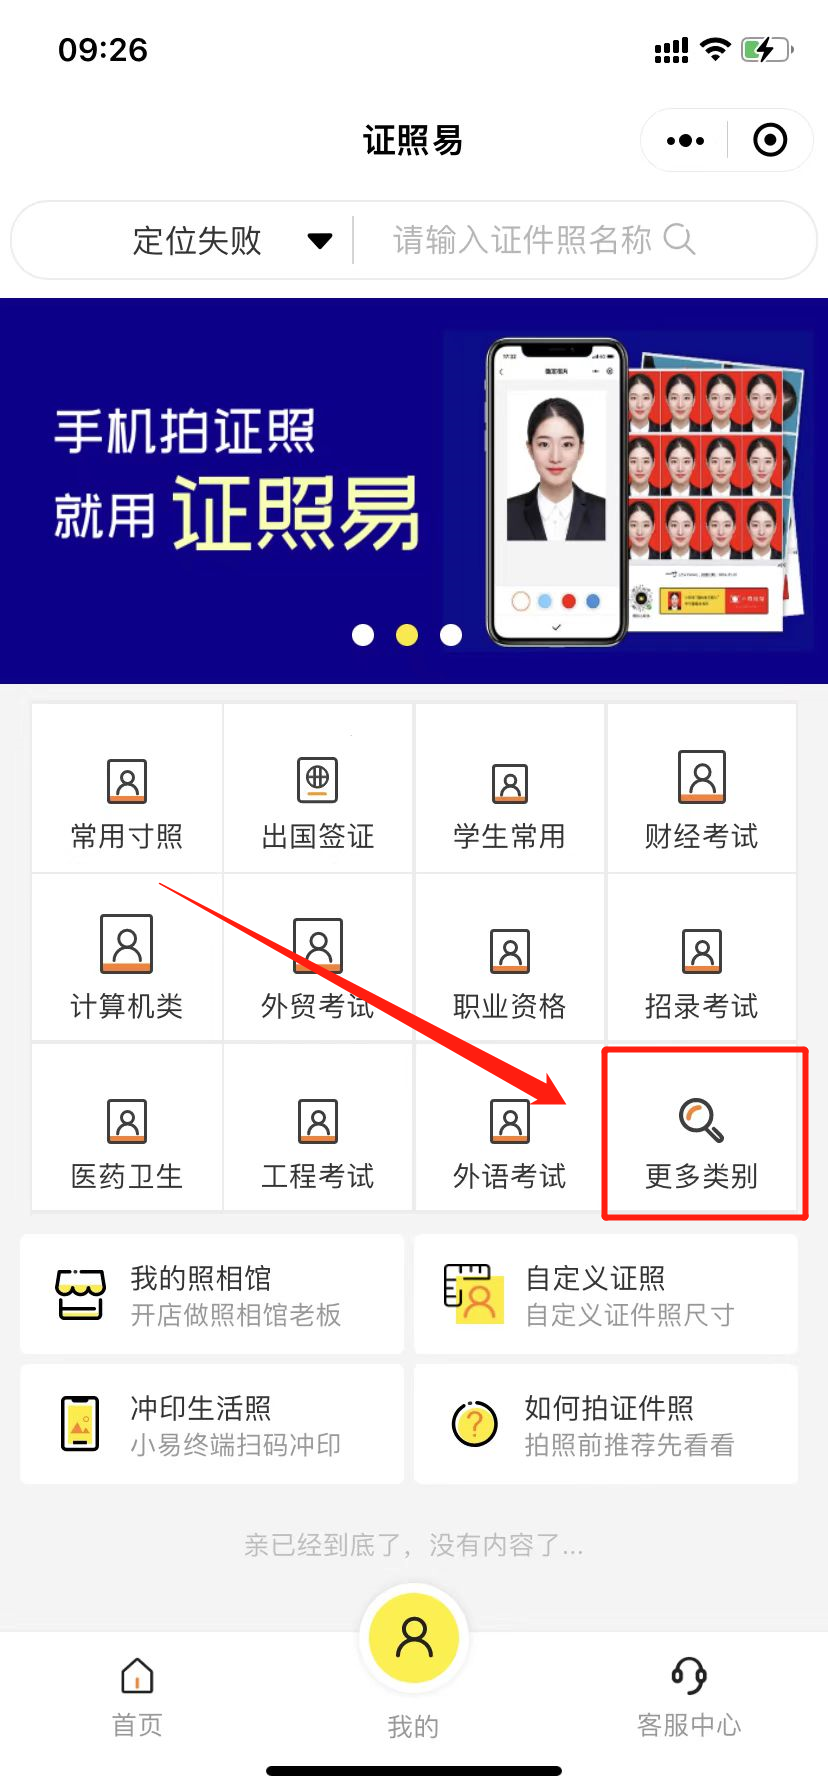 深圳金融社保卡照片回执网上办理指南（入口+流程）